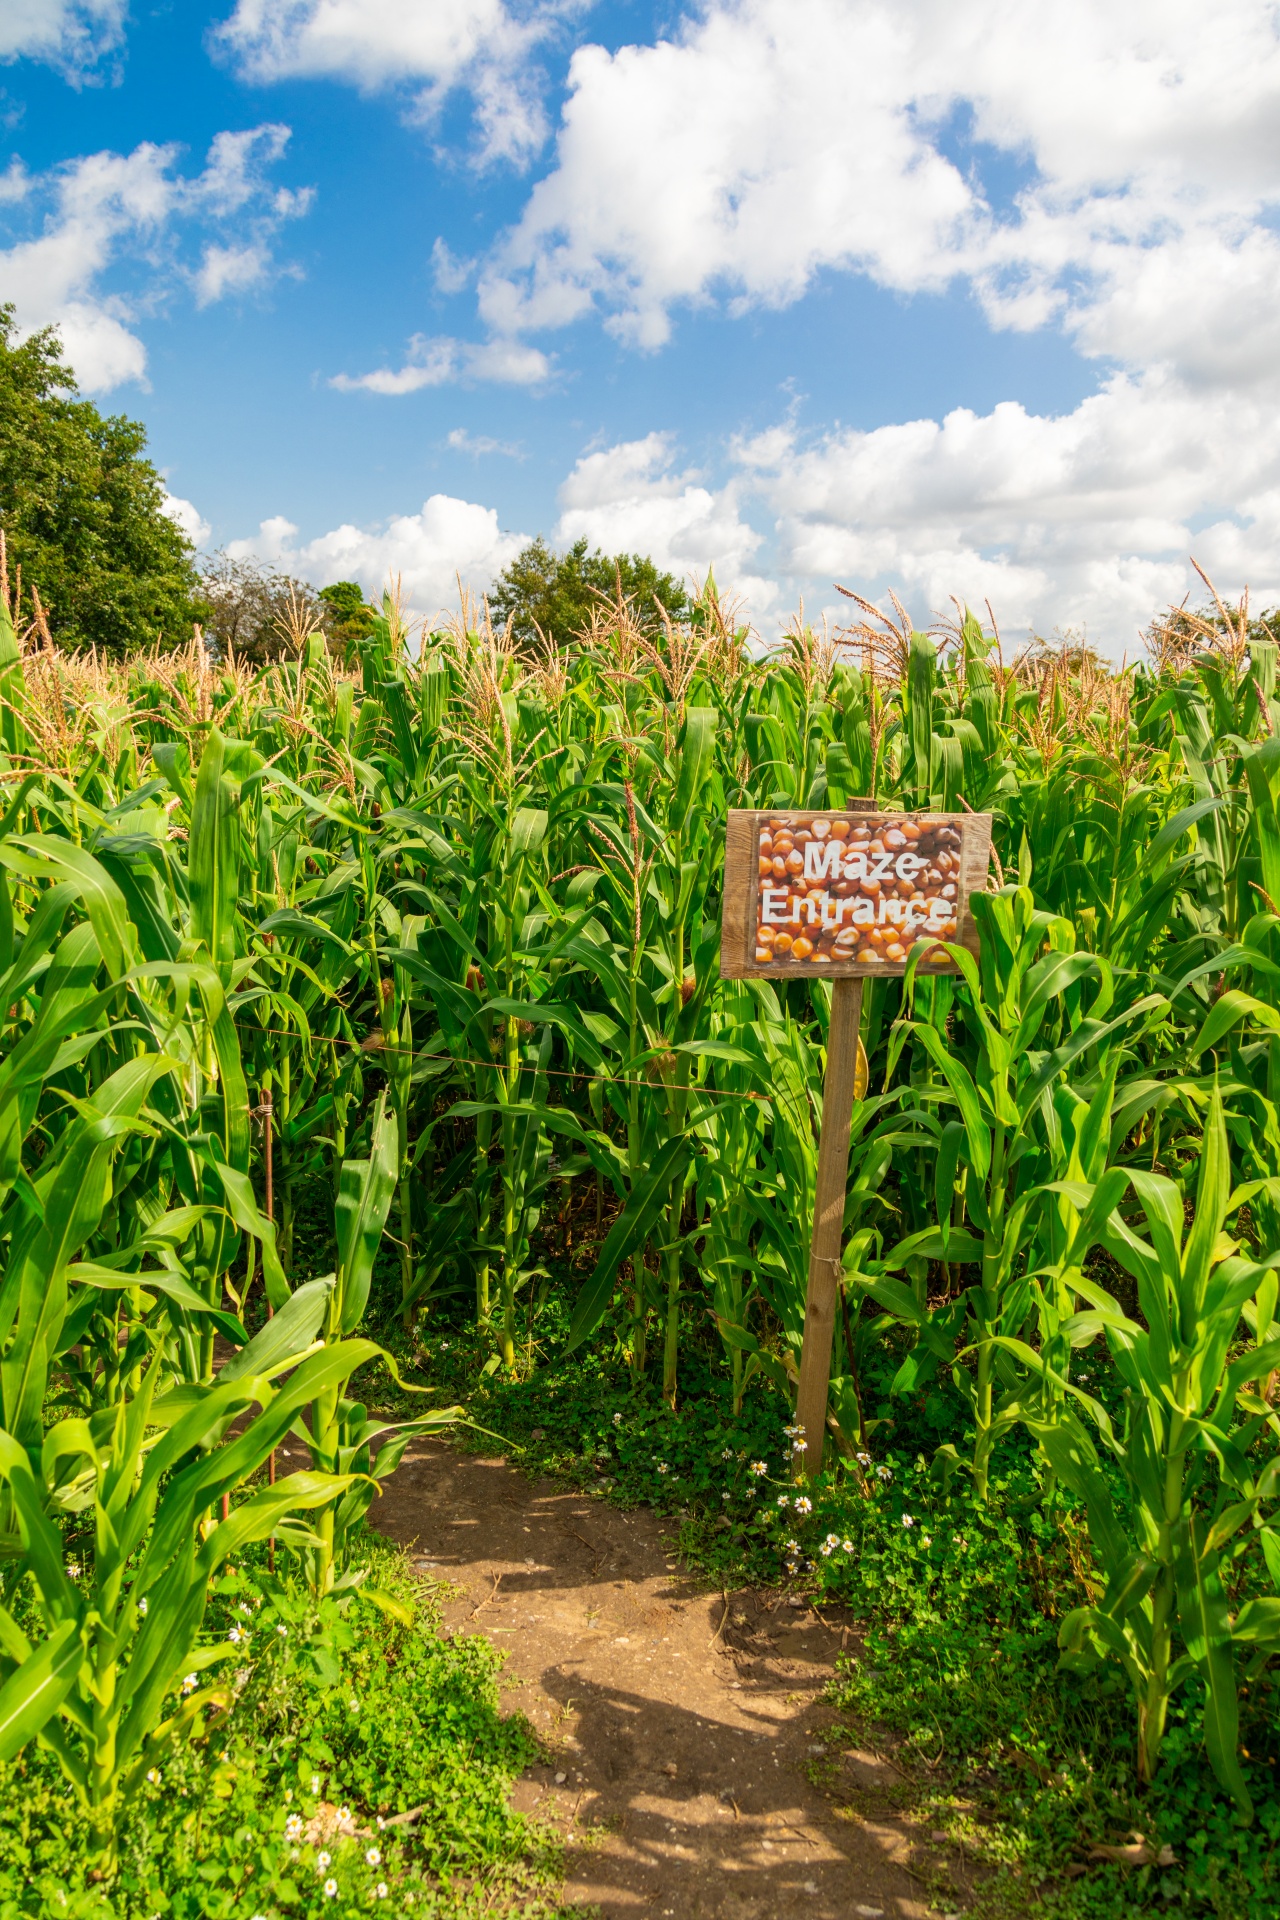 Entrance to a corn maze